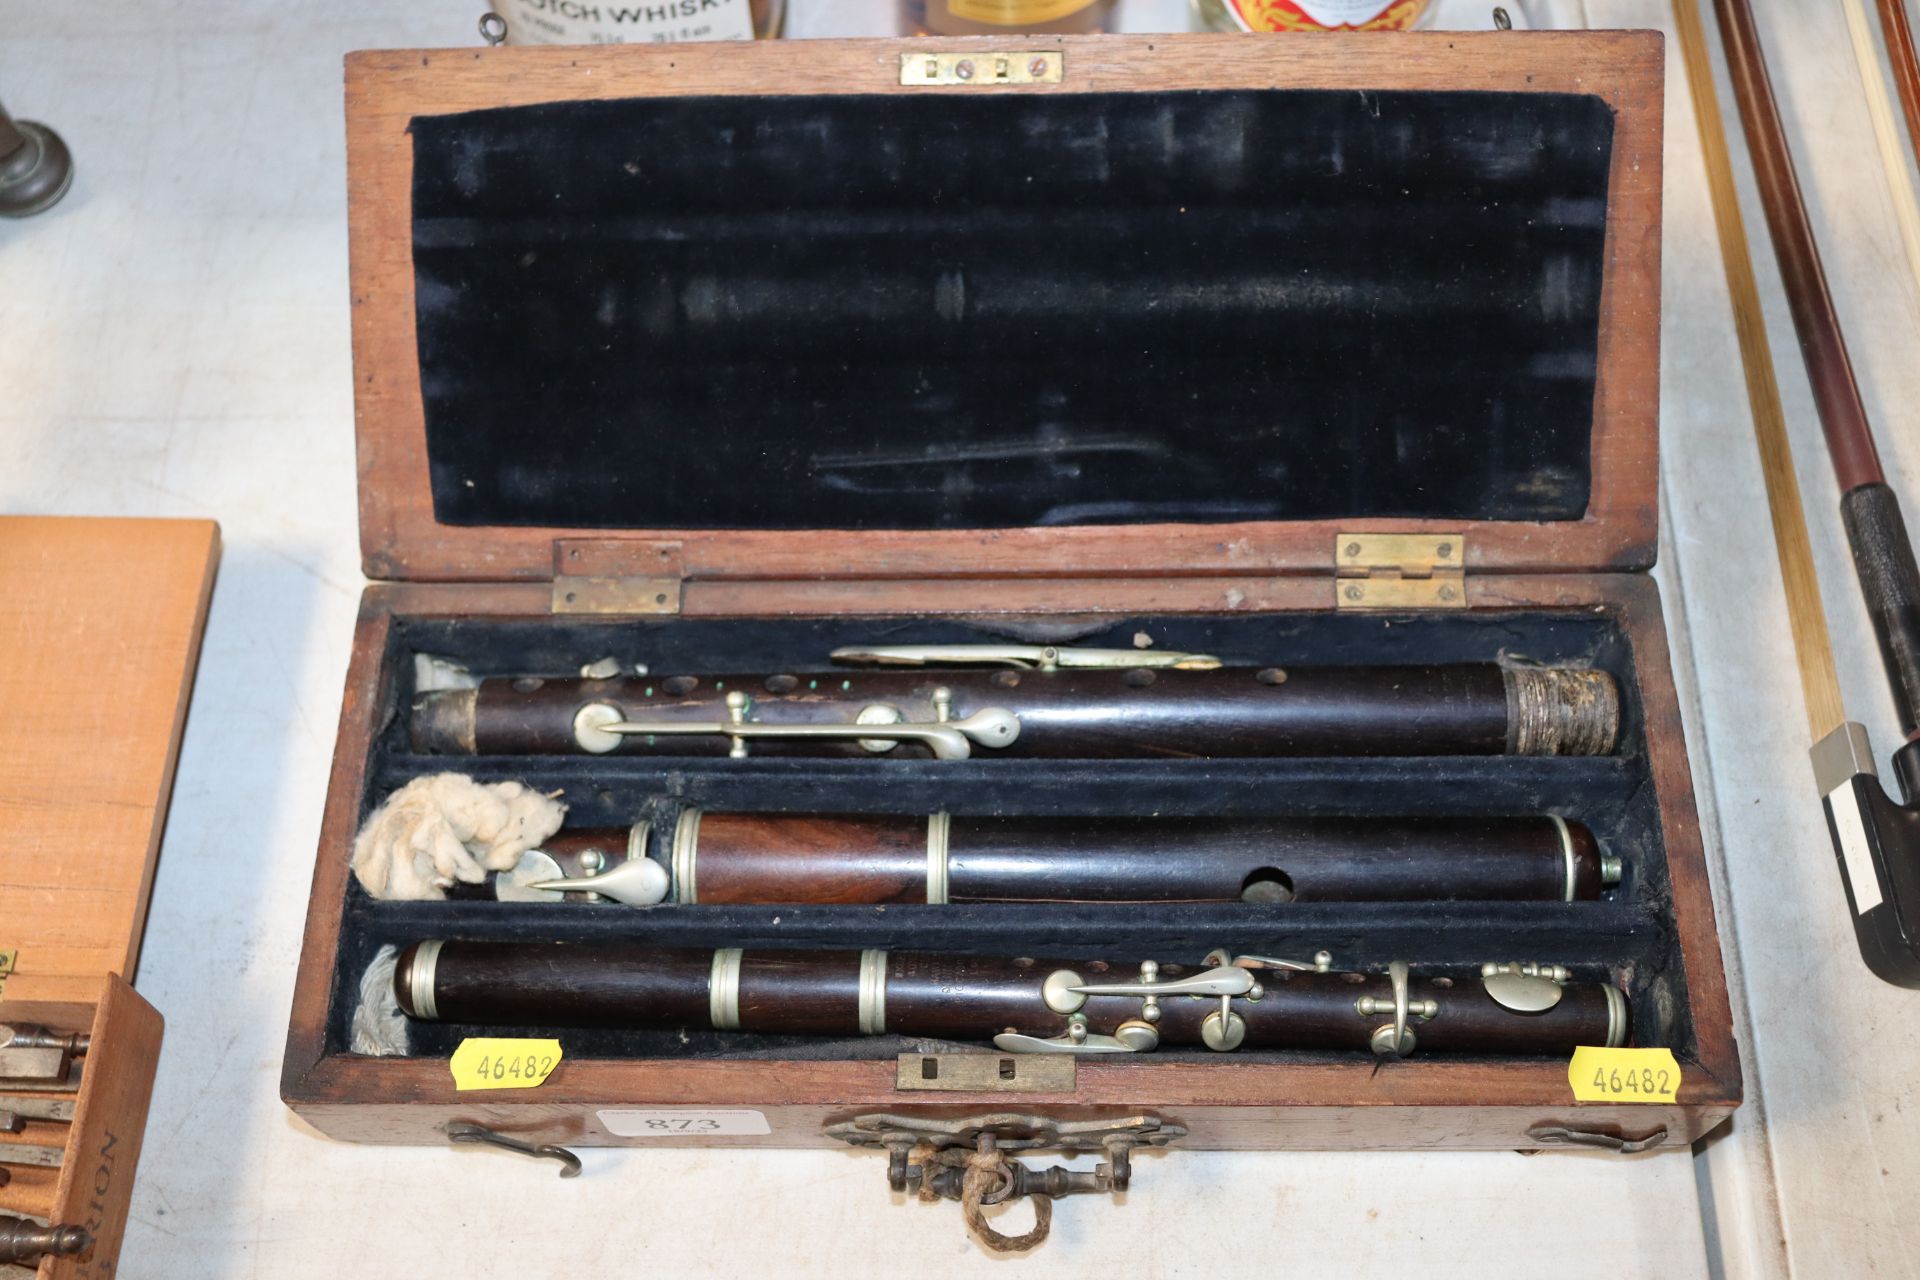 A boxed Hawk flute